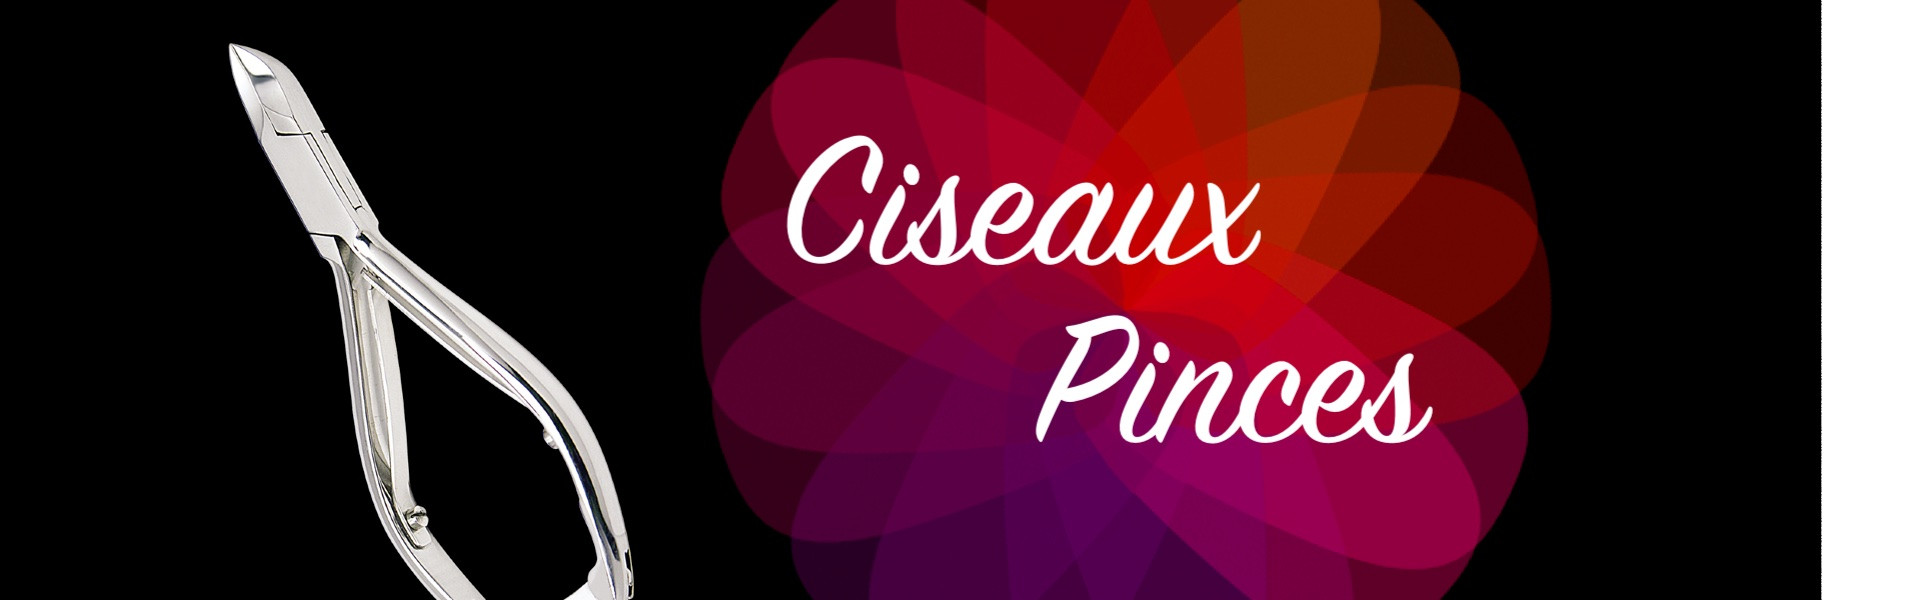 Ciseaux Et Pinces